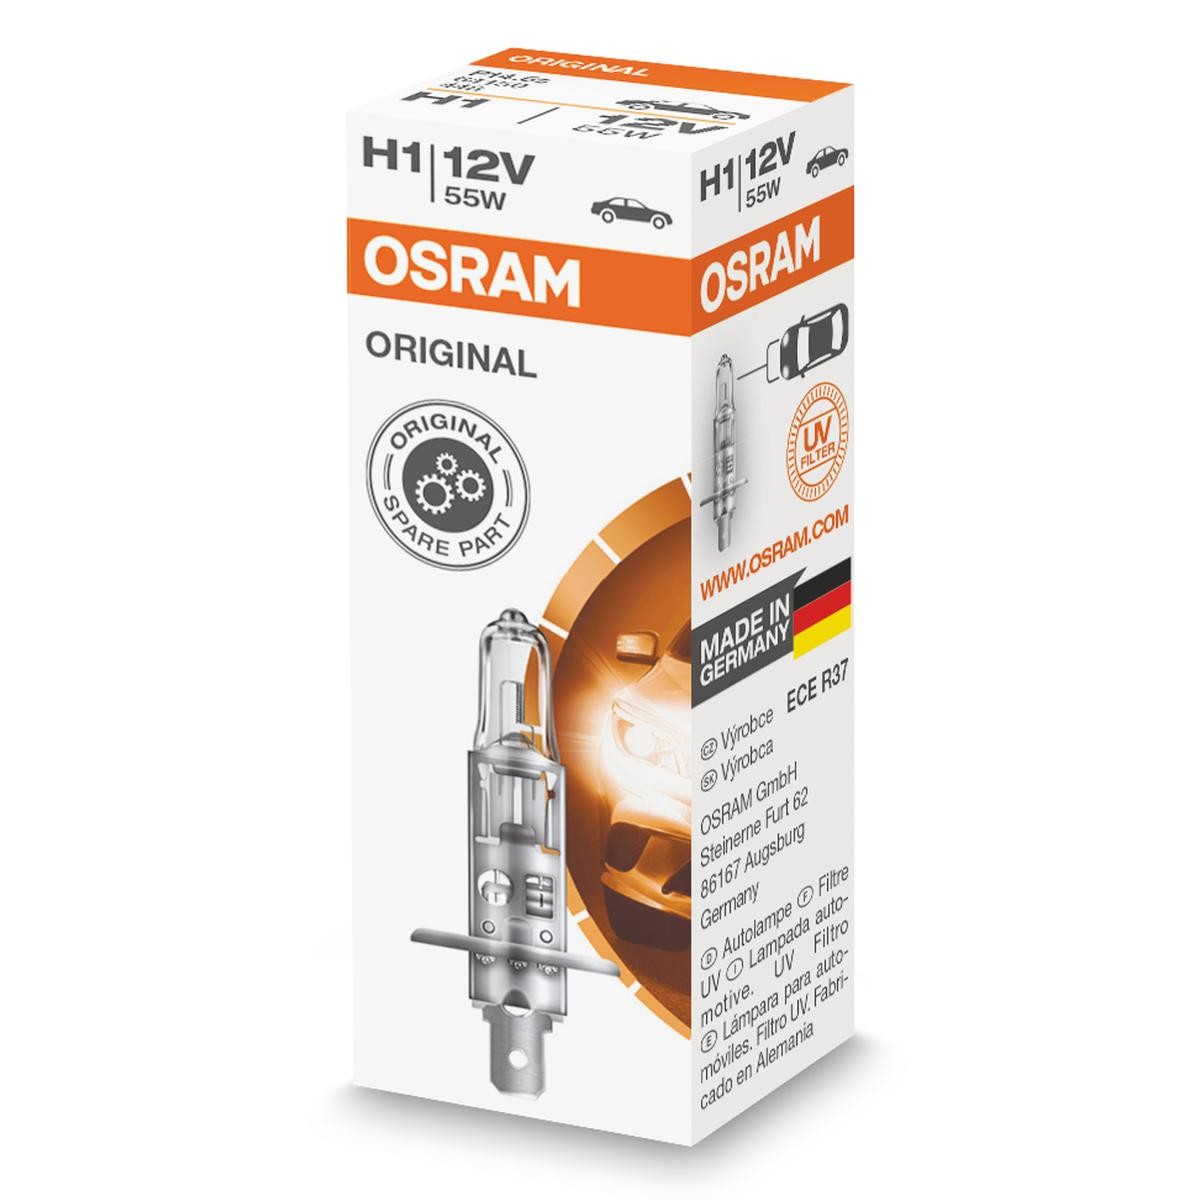 H1 OSRAM 64150 Original DACIA Lampe für Fernlicht H1 12V 55W 3200K Halogen